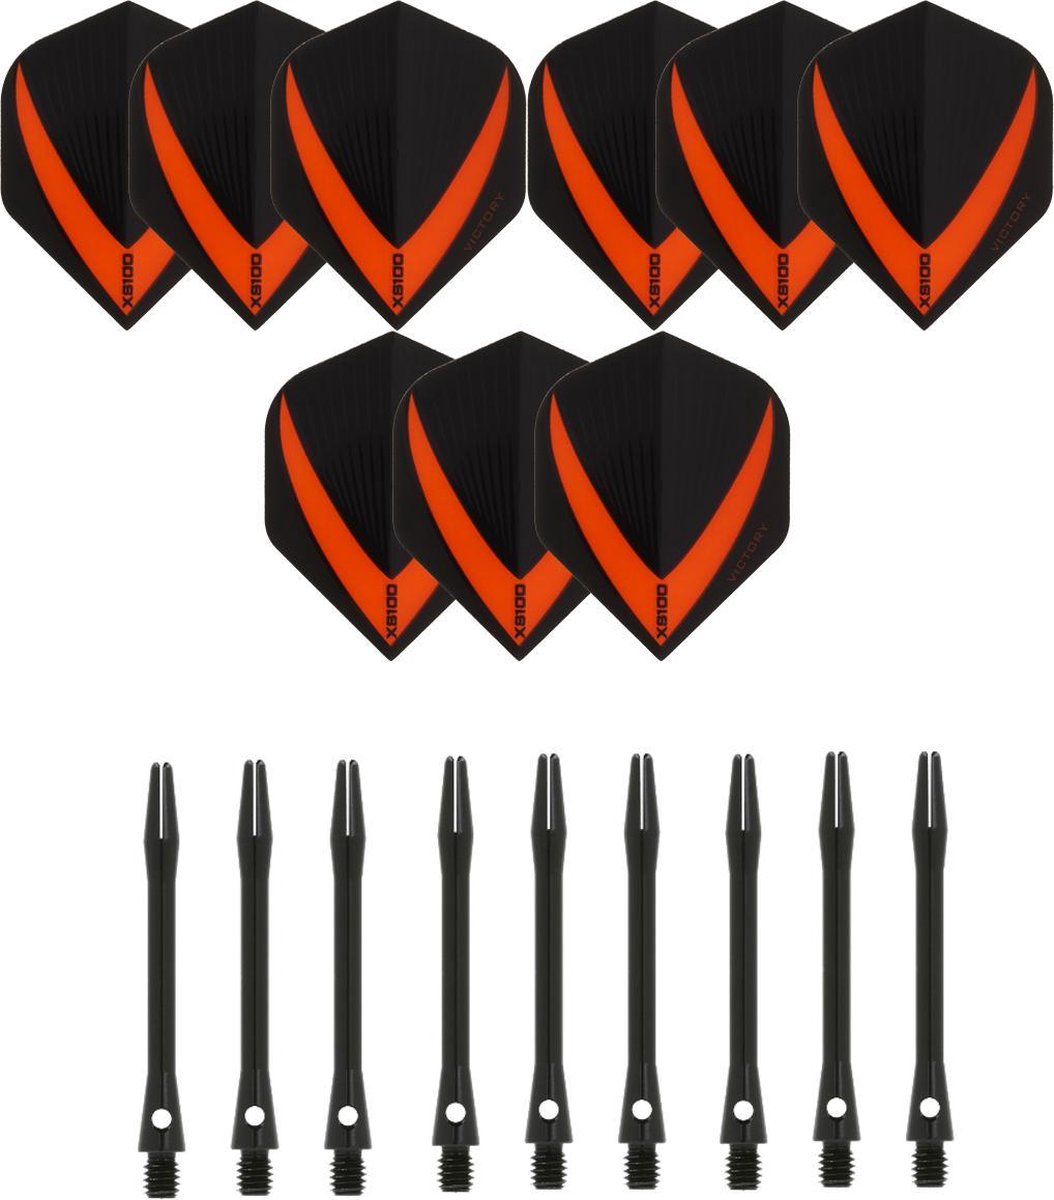 3 sets (9 stuks) Super Sterke - Oranje - Vista-X - darts flights - inclusief 3 sets (9 stuks) - medium - Aluminium - zwart - darts shafts